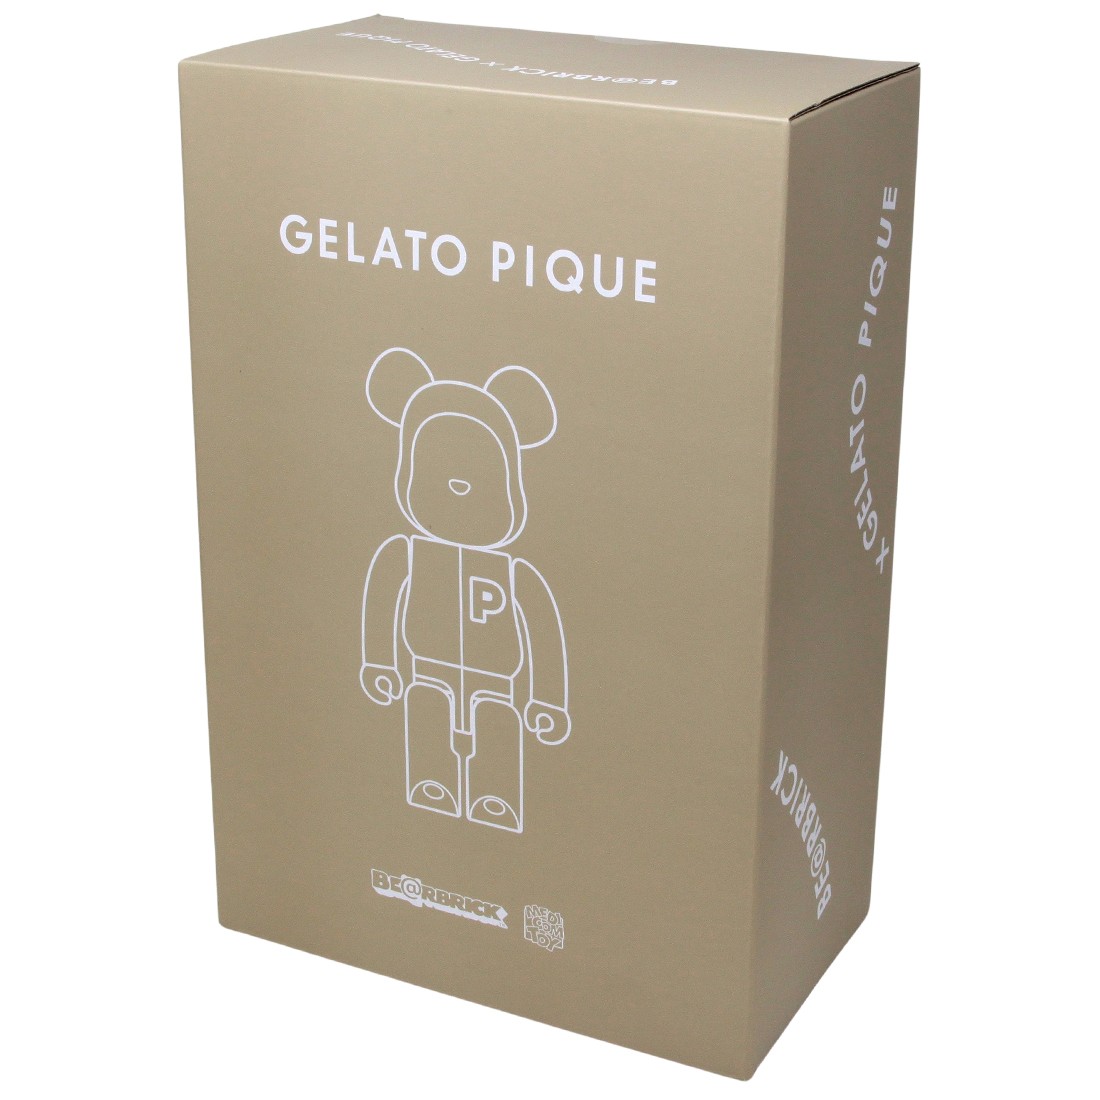 Medicom Gelato Pique Beige 400% Bearbrick Figure brown